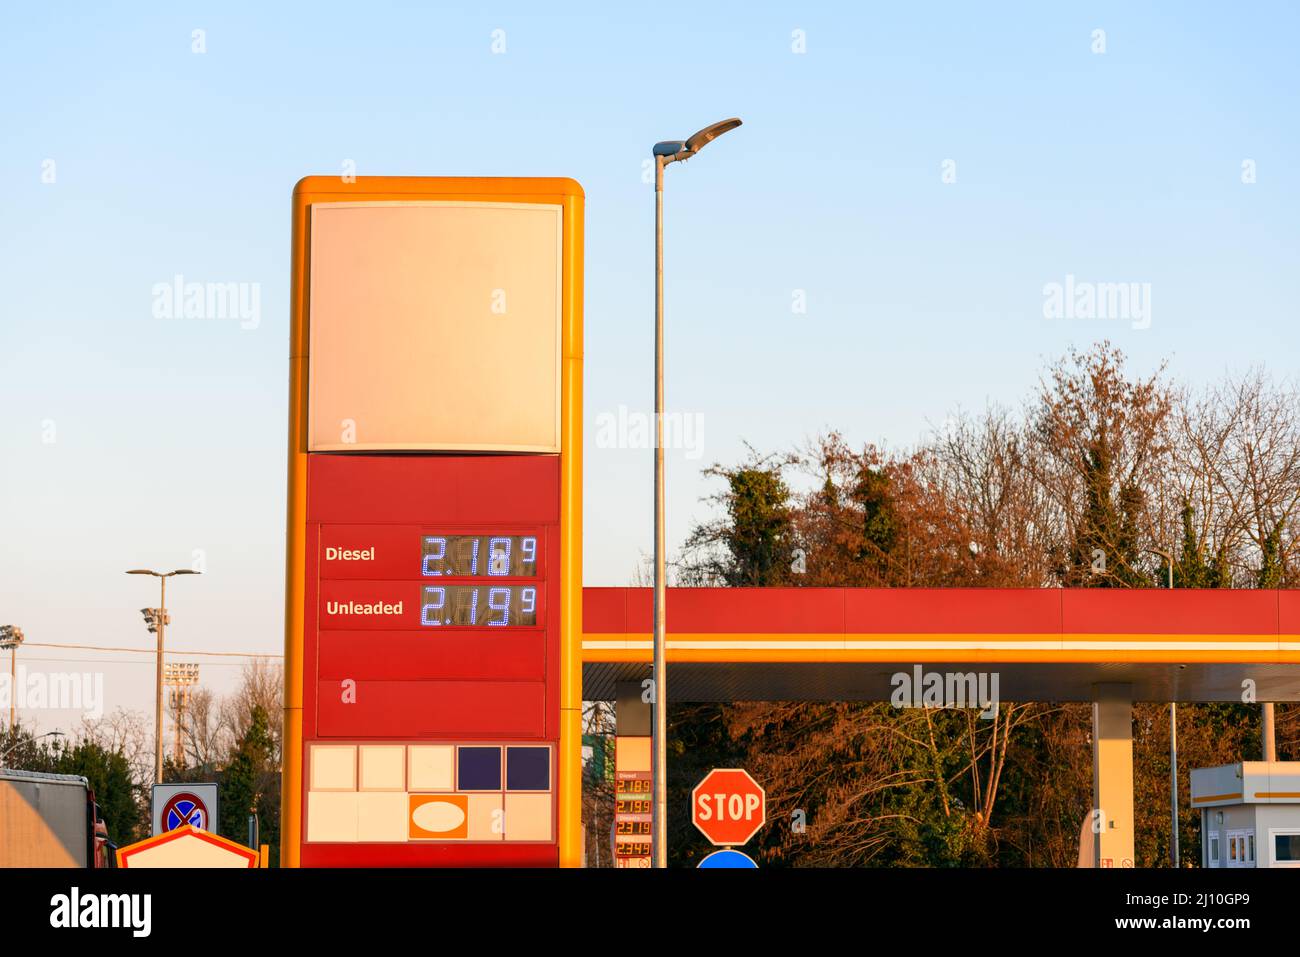 Señal de gasolinera a lo largo de una autopista bajo cielo despejado al atardecer en invierno. Aumento de los precios de la gasolina. Foto de stock